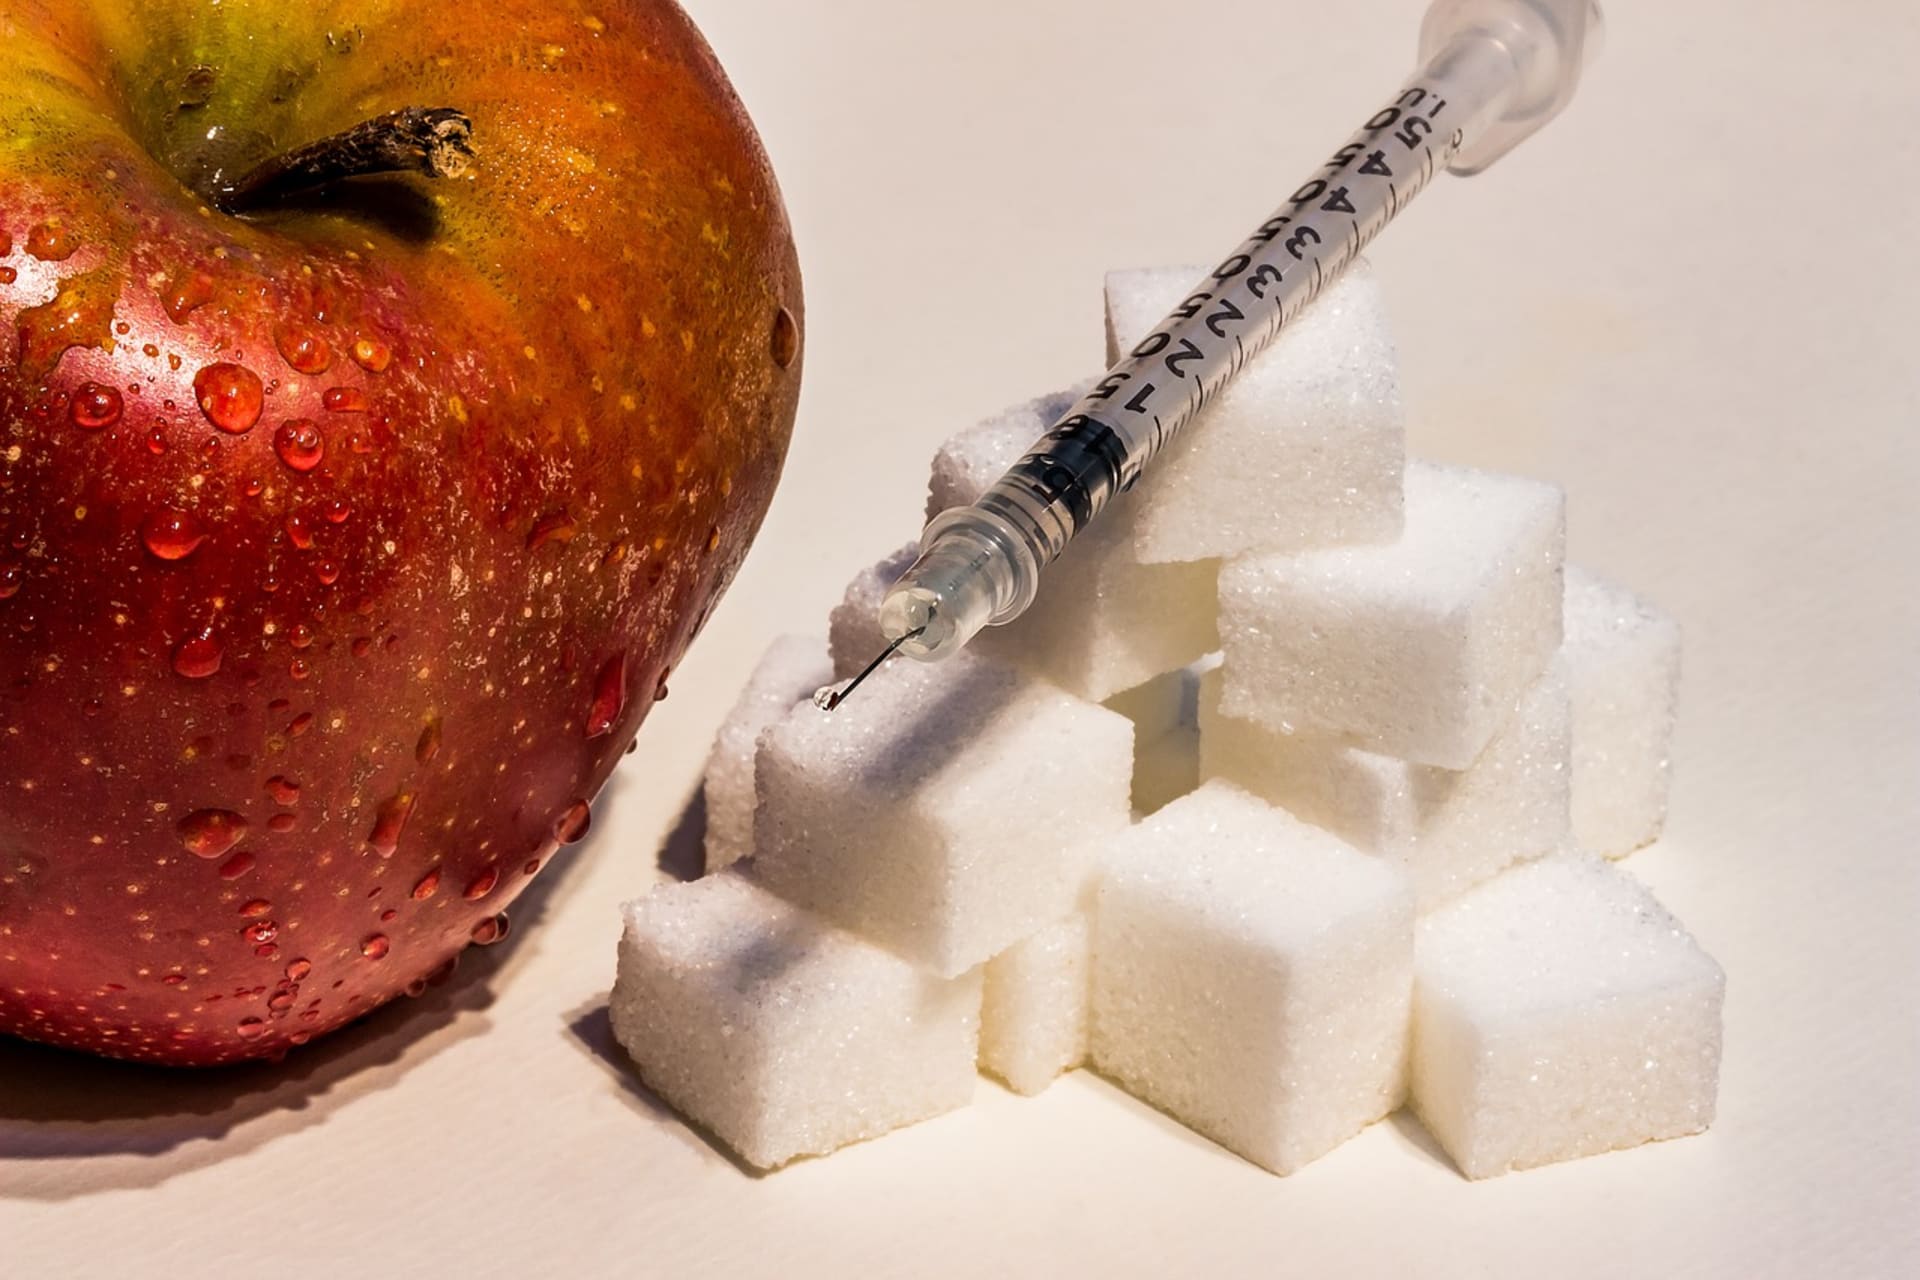 Cukrovka je považována za celosvětovou epidemii 21. století...